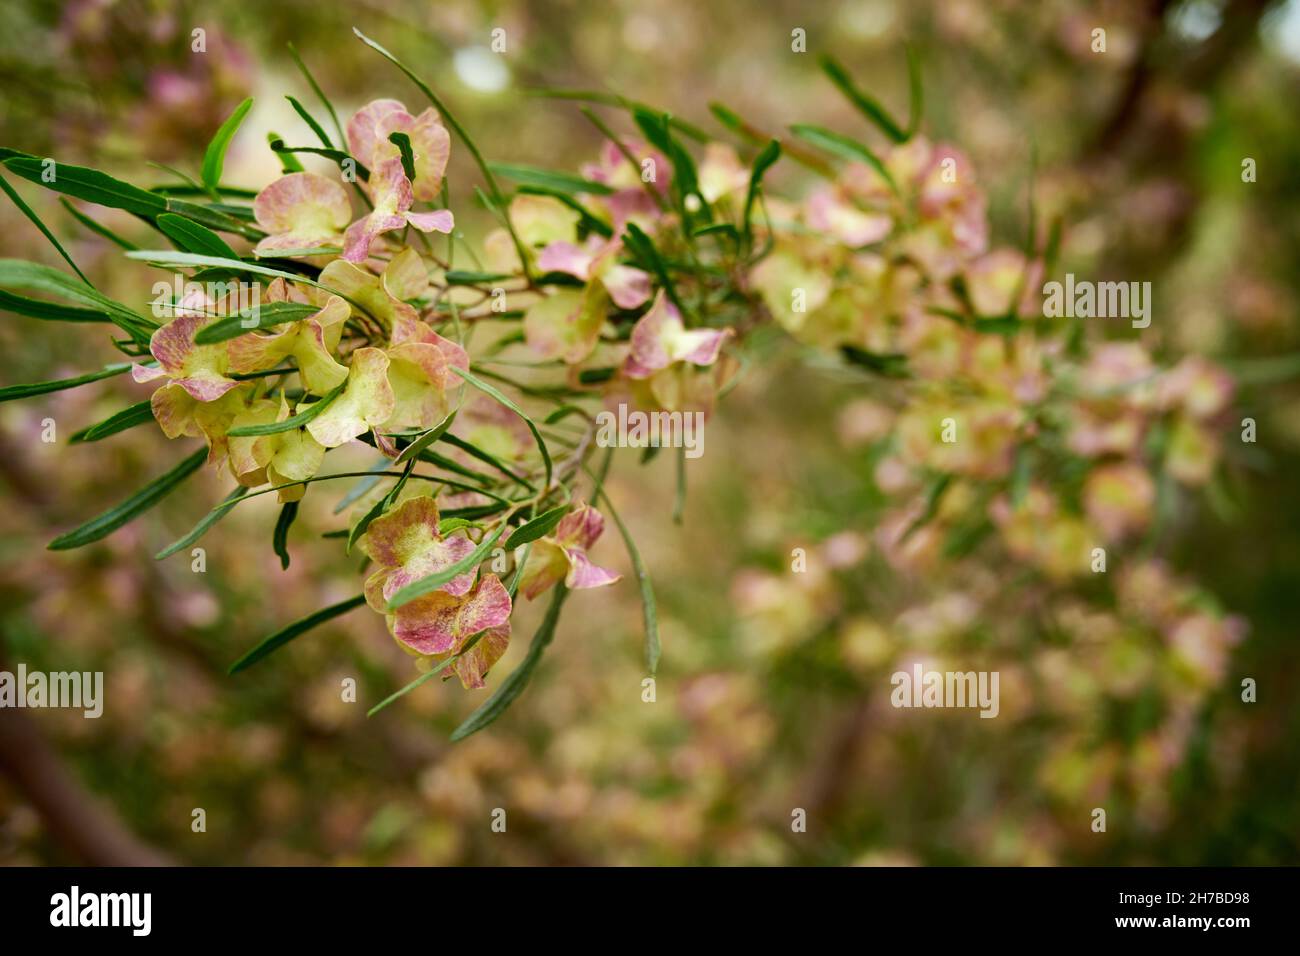 Capsule de fructification sur un petit Bush de Leaf Hop, Dodoneae viscosa, un arbuste indigène , srubby à petit arbre, commun à travers l'Australie.jour couvert, saisons,spr Banque D'Images